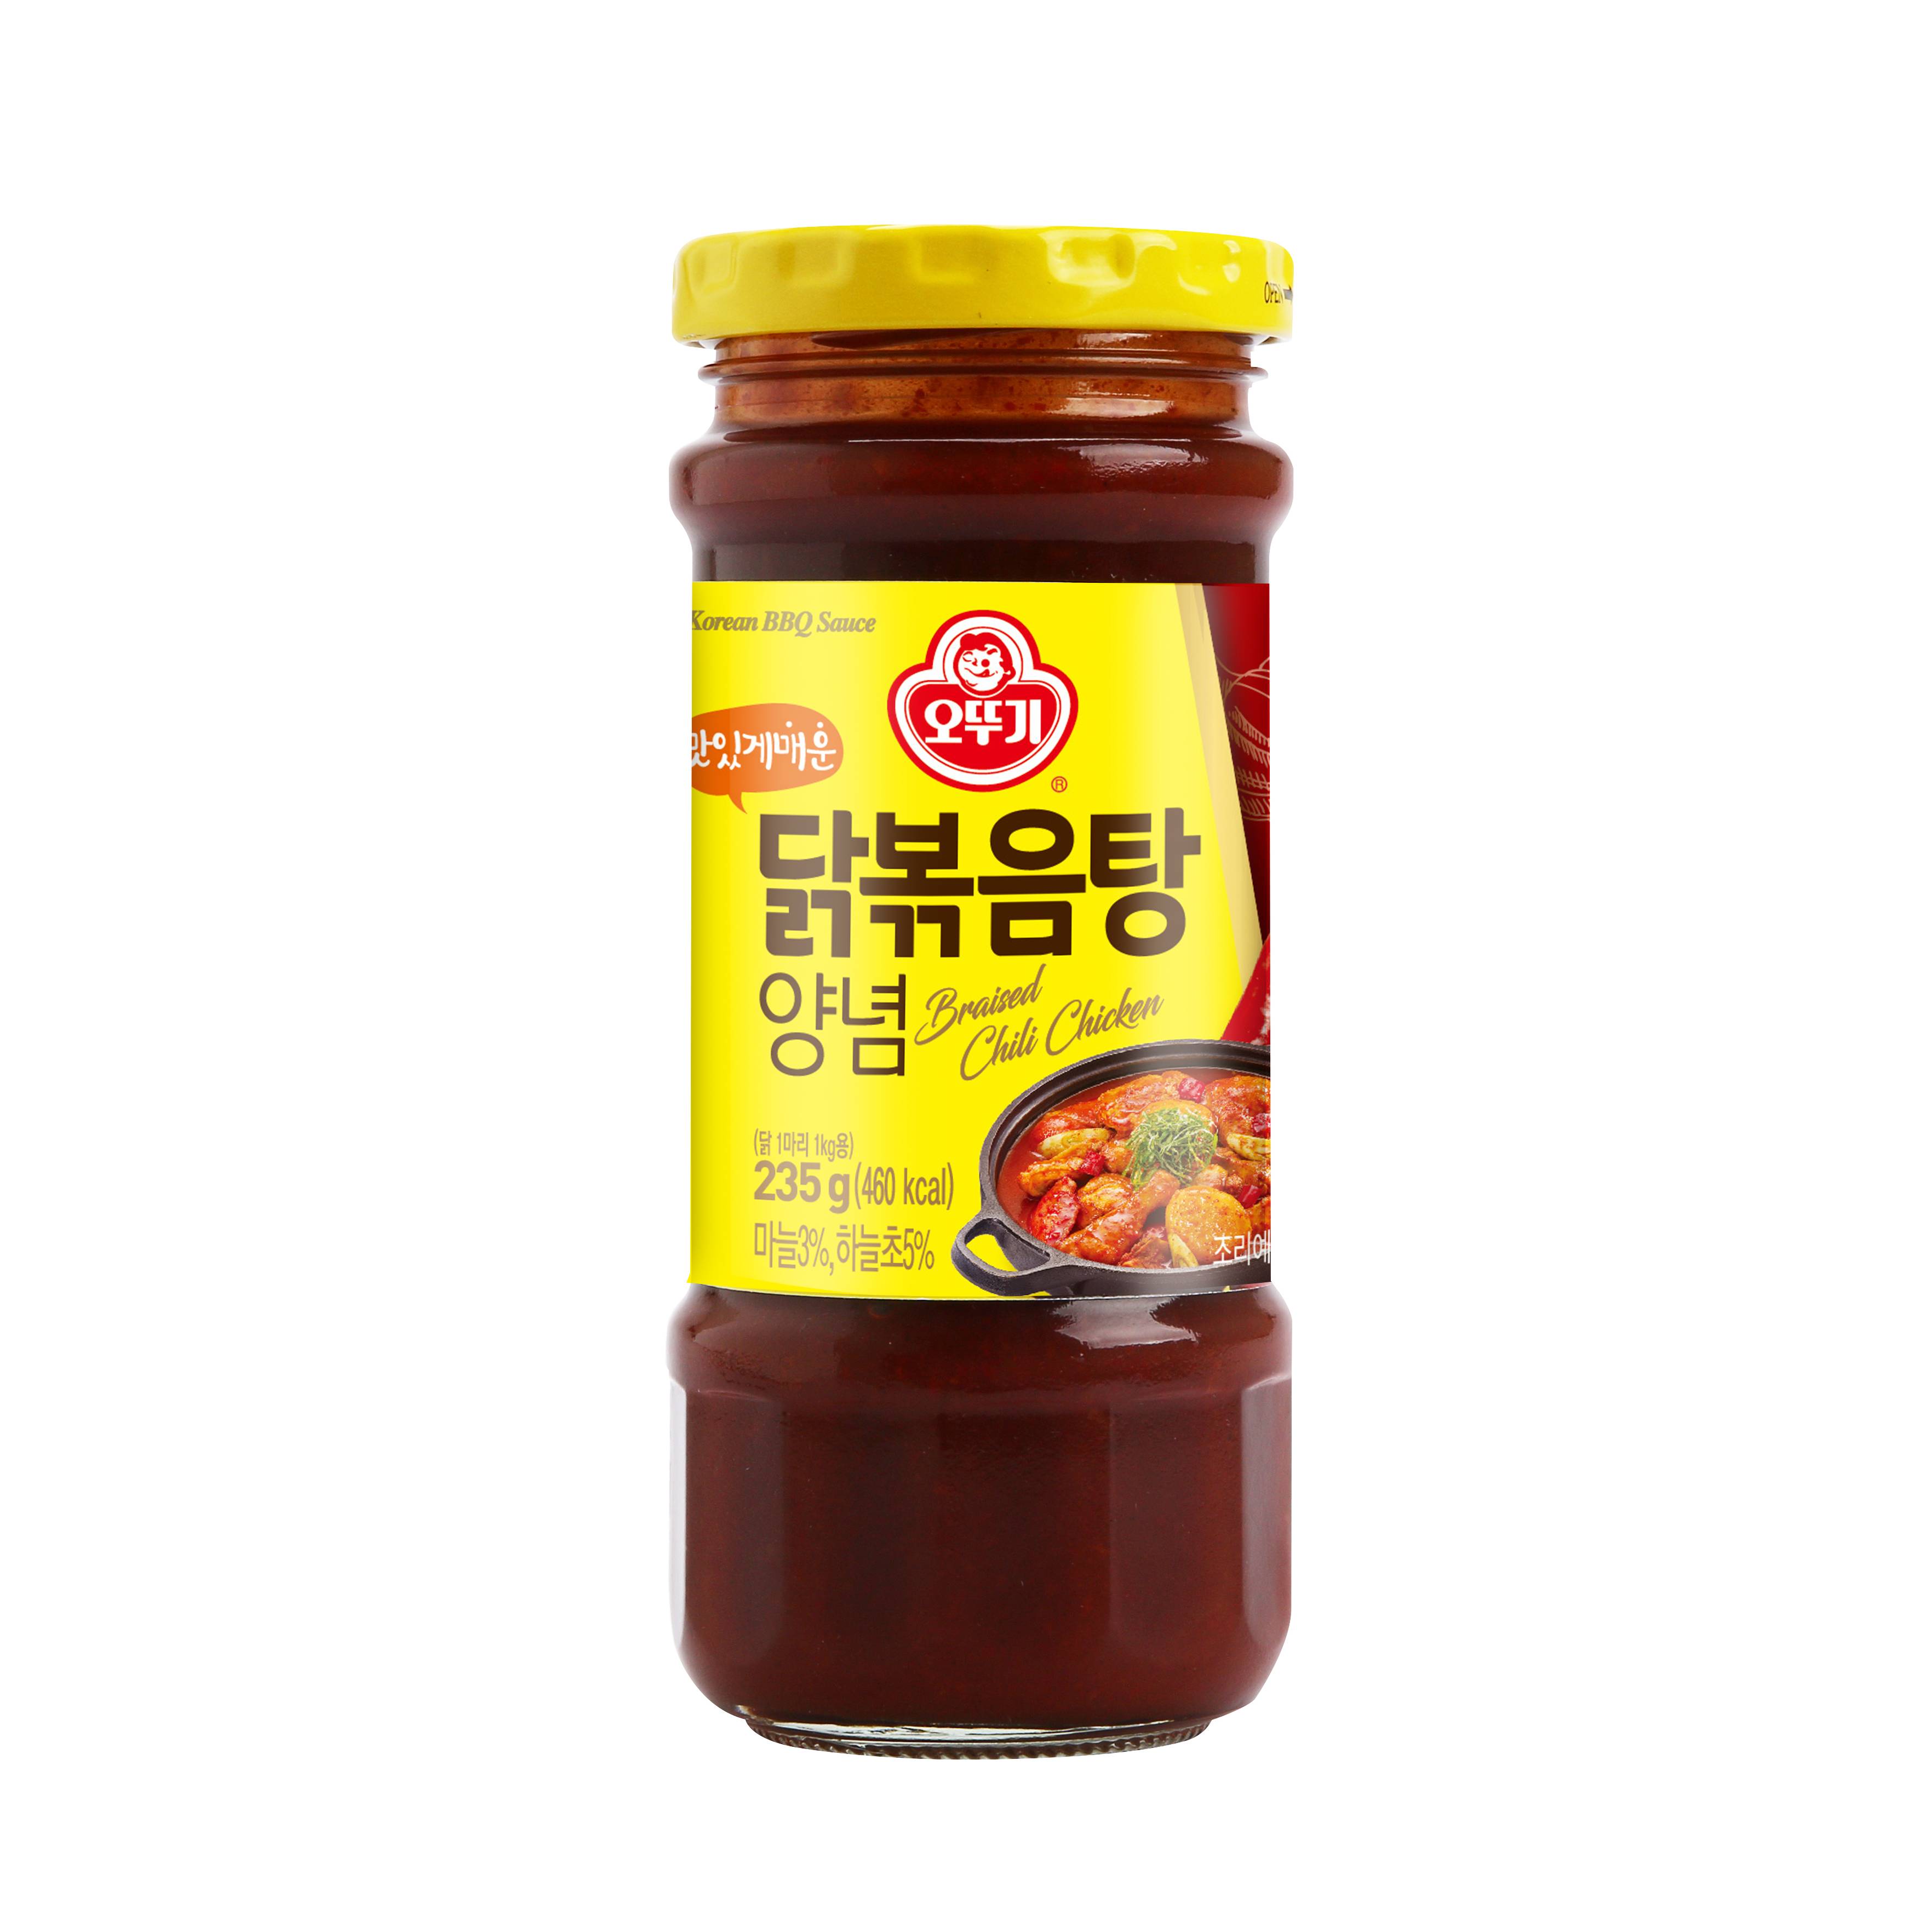 KOREAN SAUCE FOR BRAISED SPICY CHICKEN